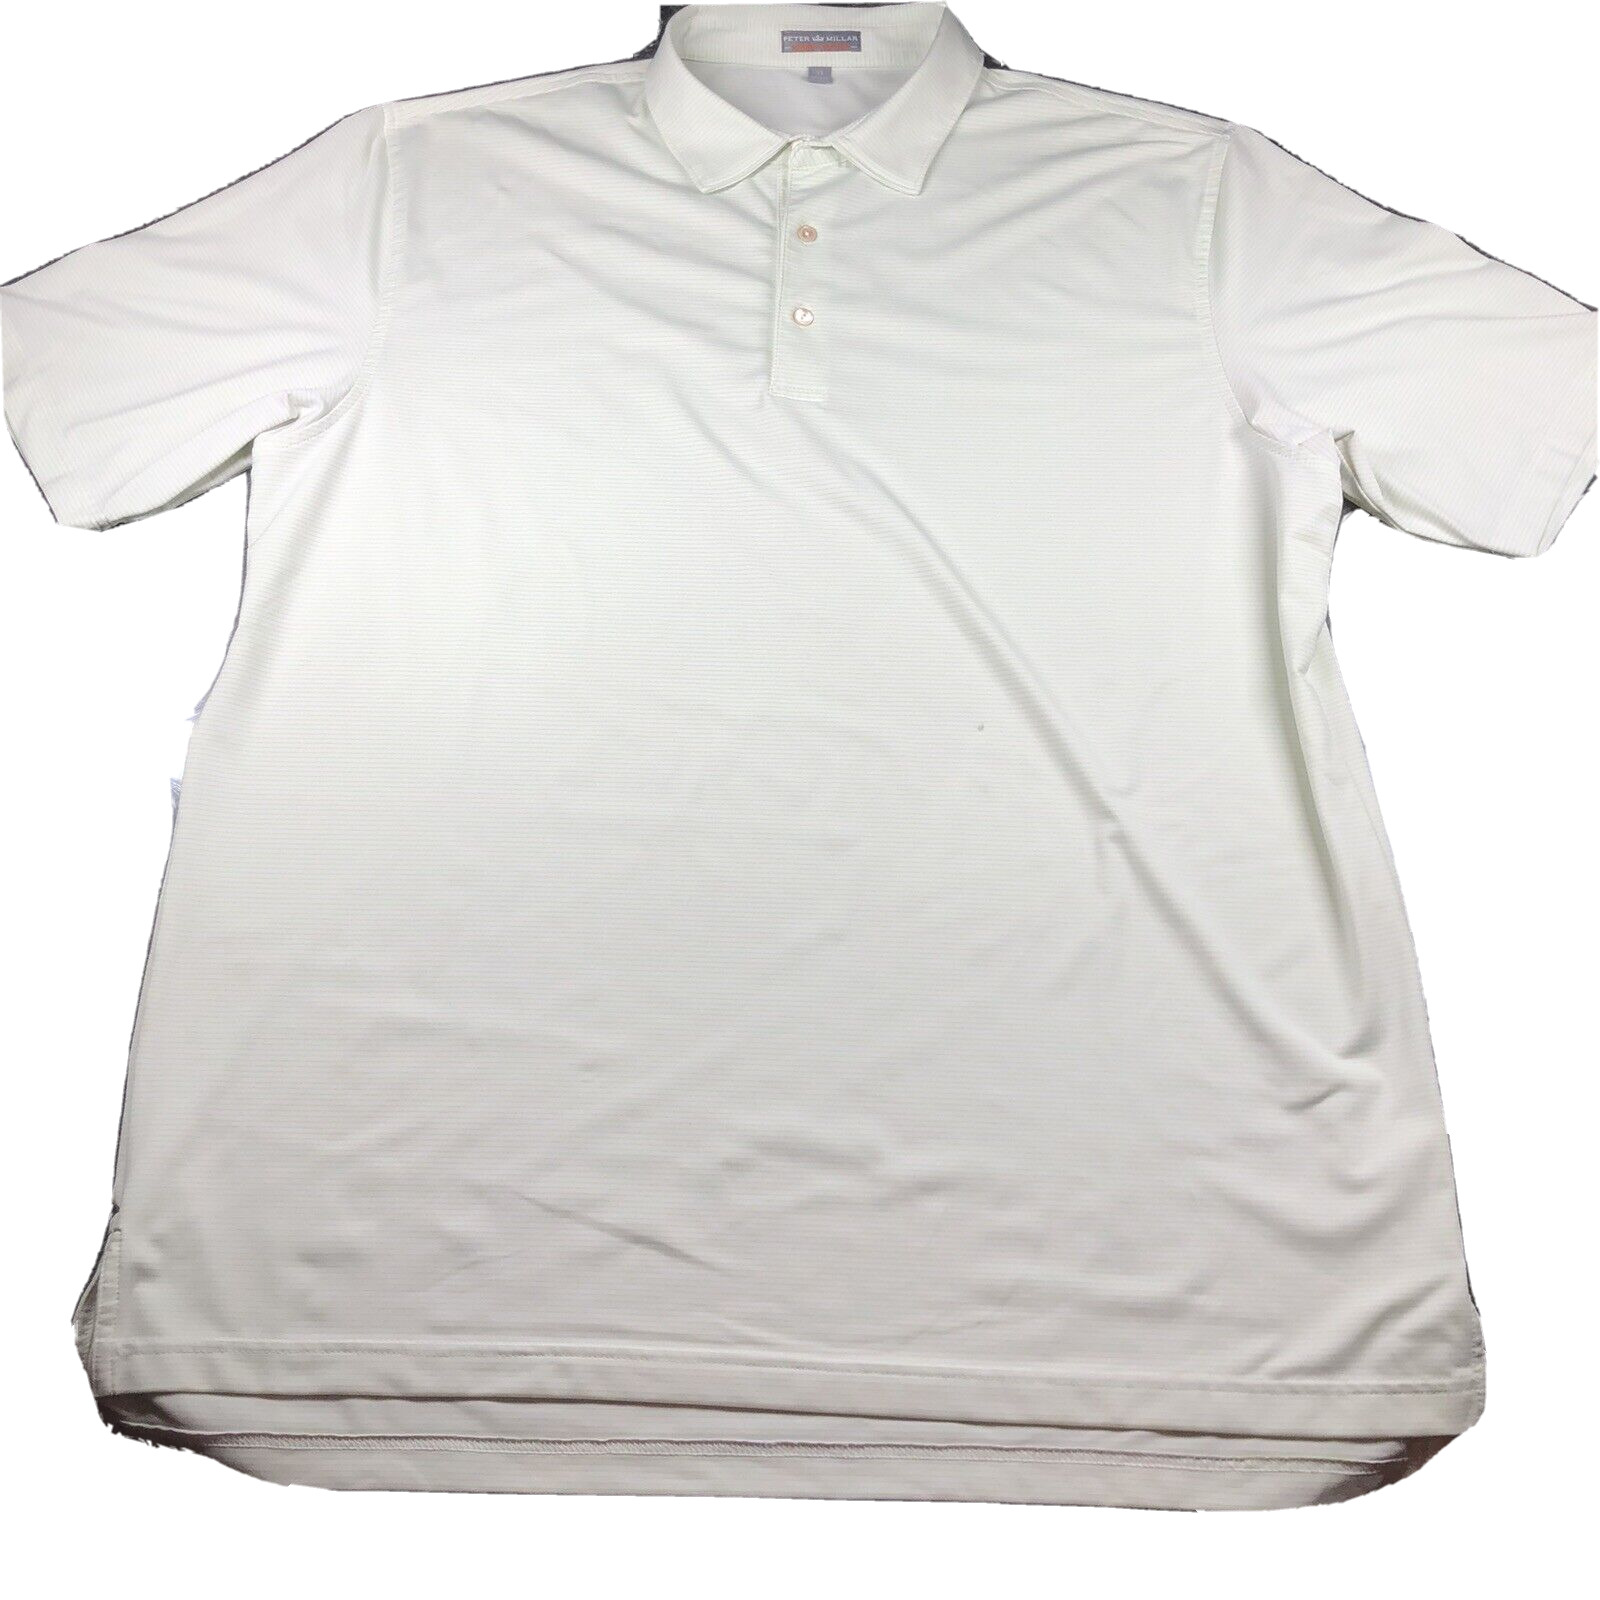 Peter Millar Summer Comfort Shirt Mens XL Green Striped Performance Polo Golf